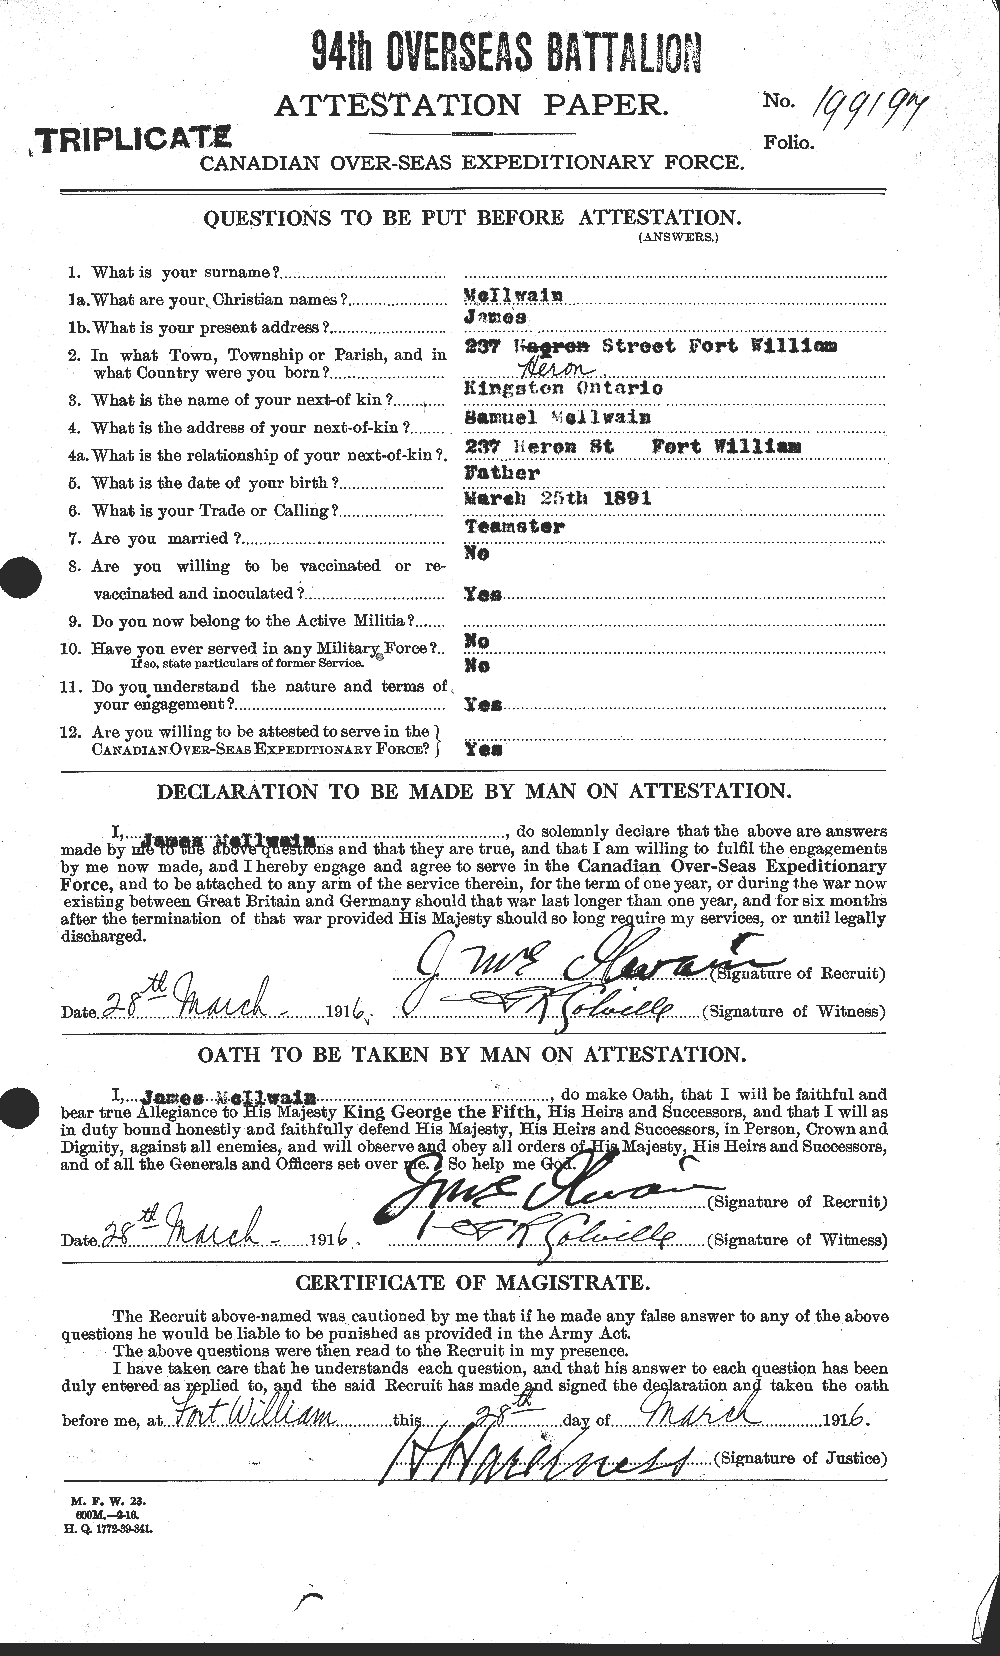 Dossiers du Personnel de la Première Guerre mondiale - CEC 526499a